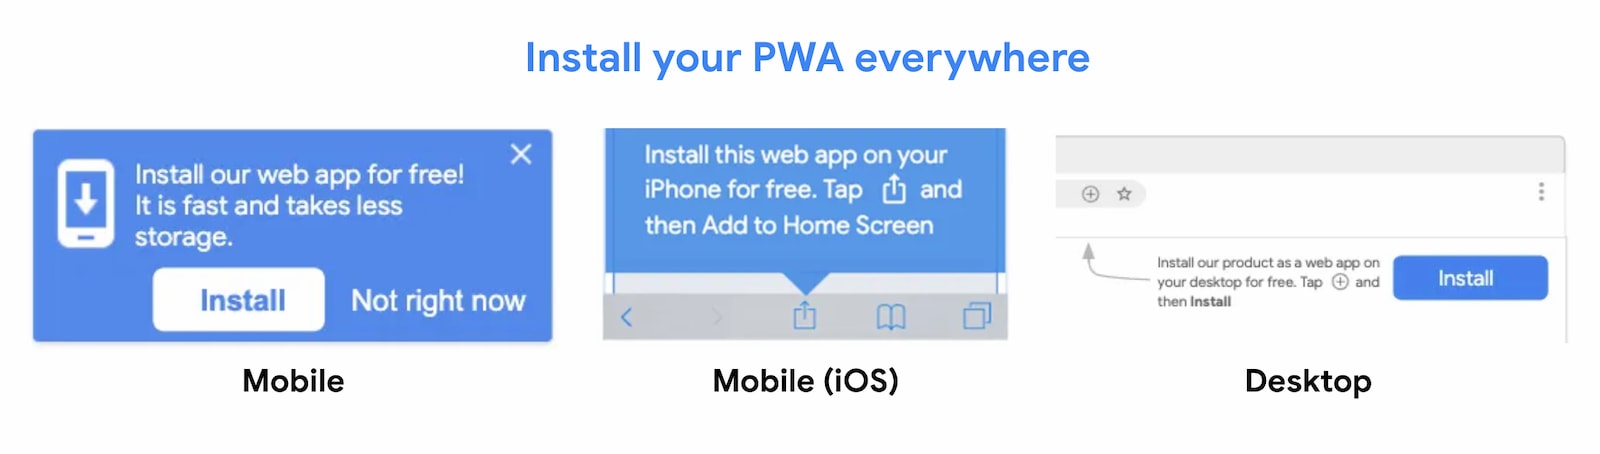 PWA को हर जगह इंस्टॉल किया जा सकता है.